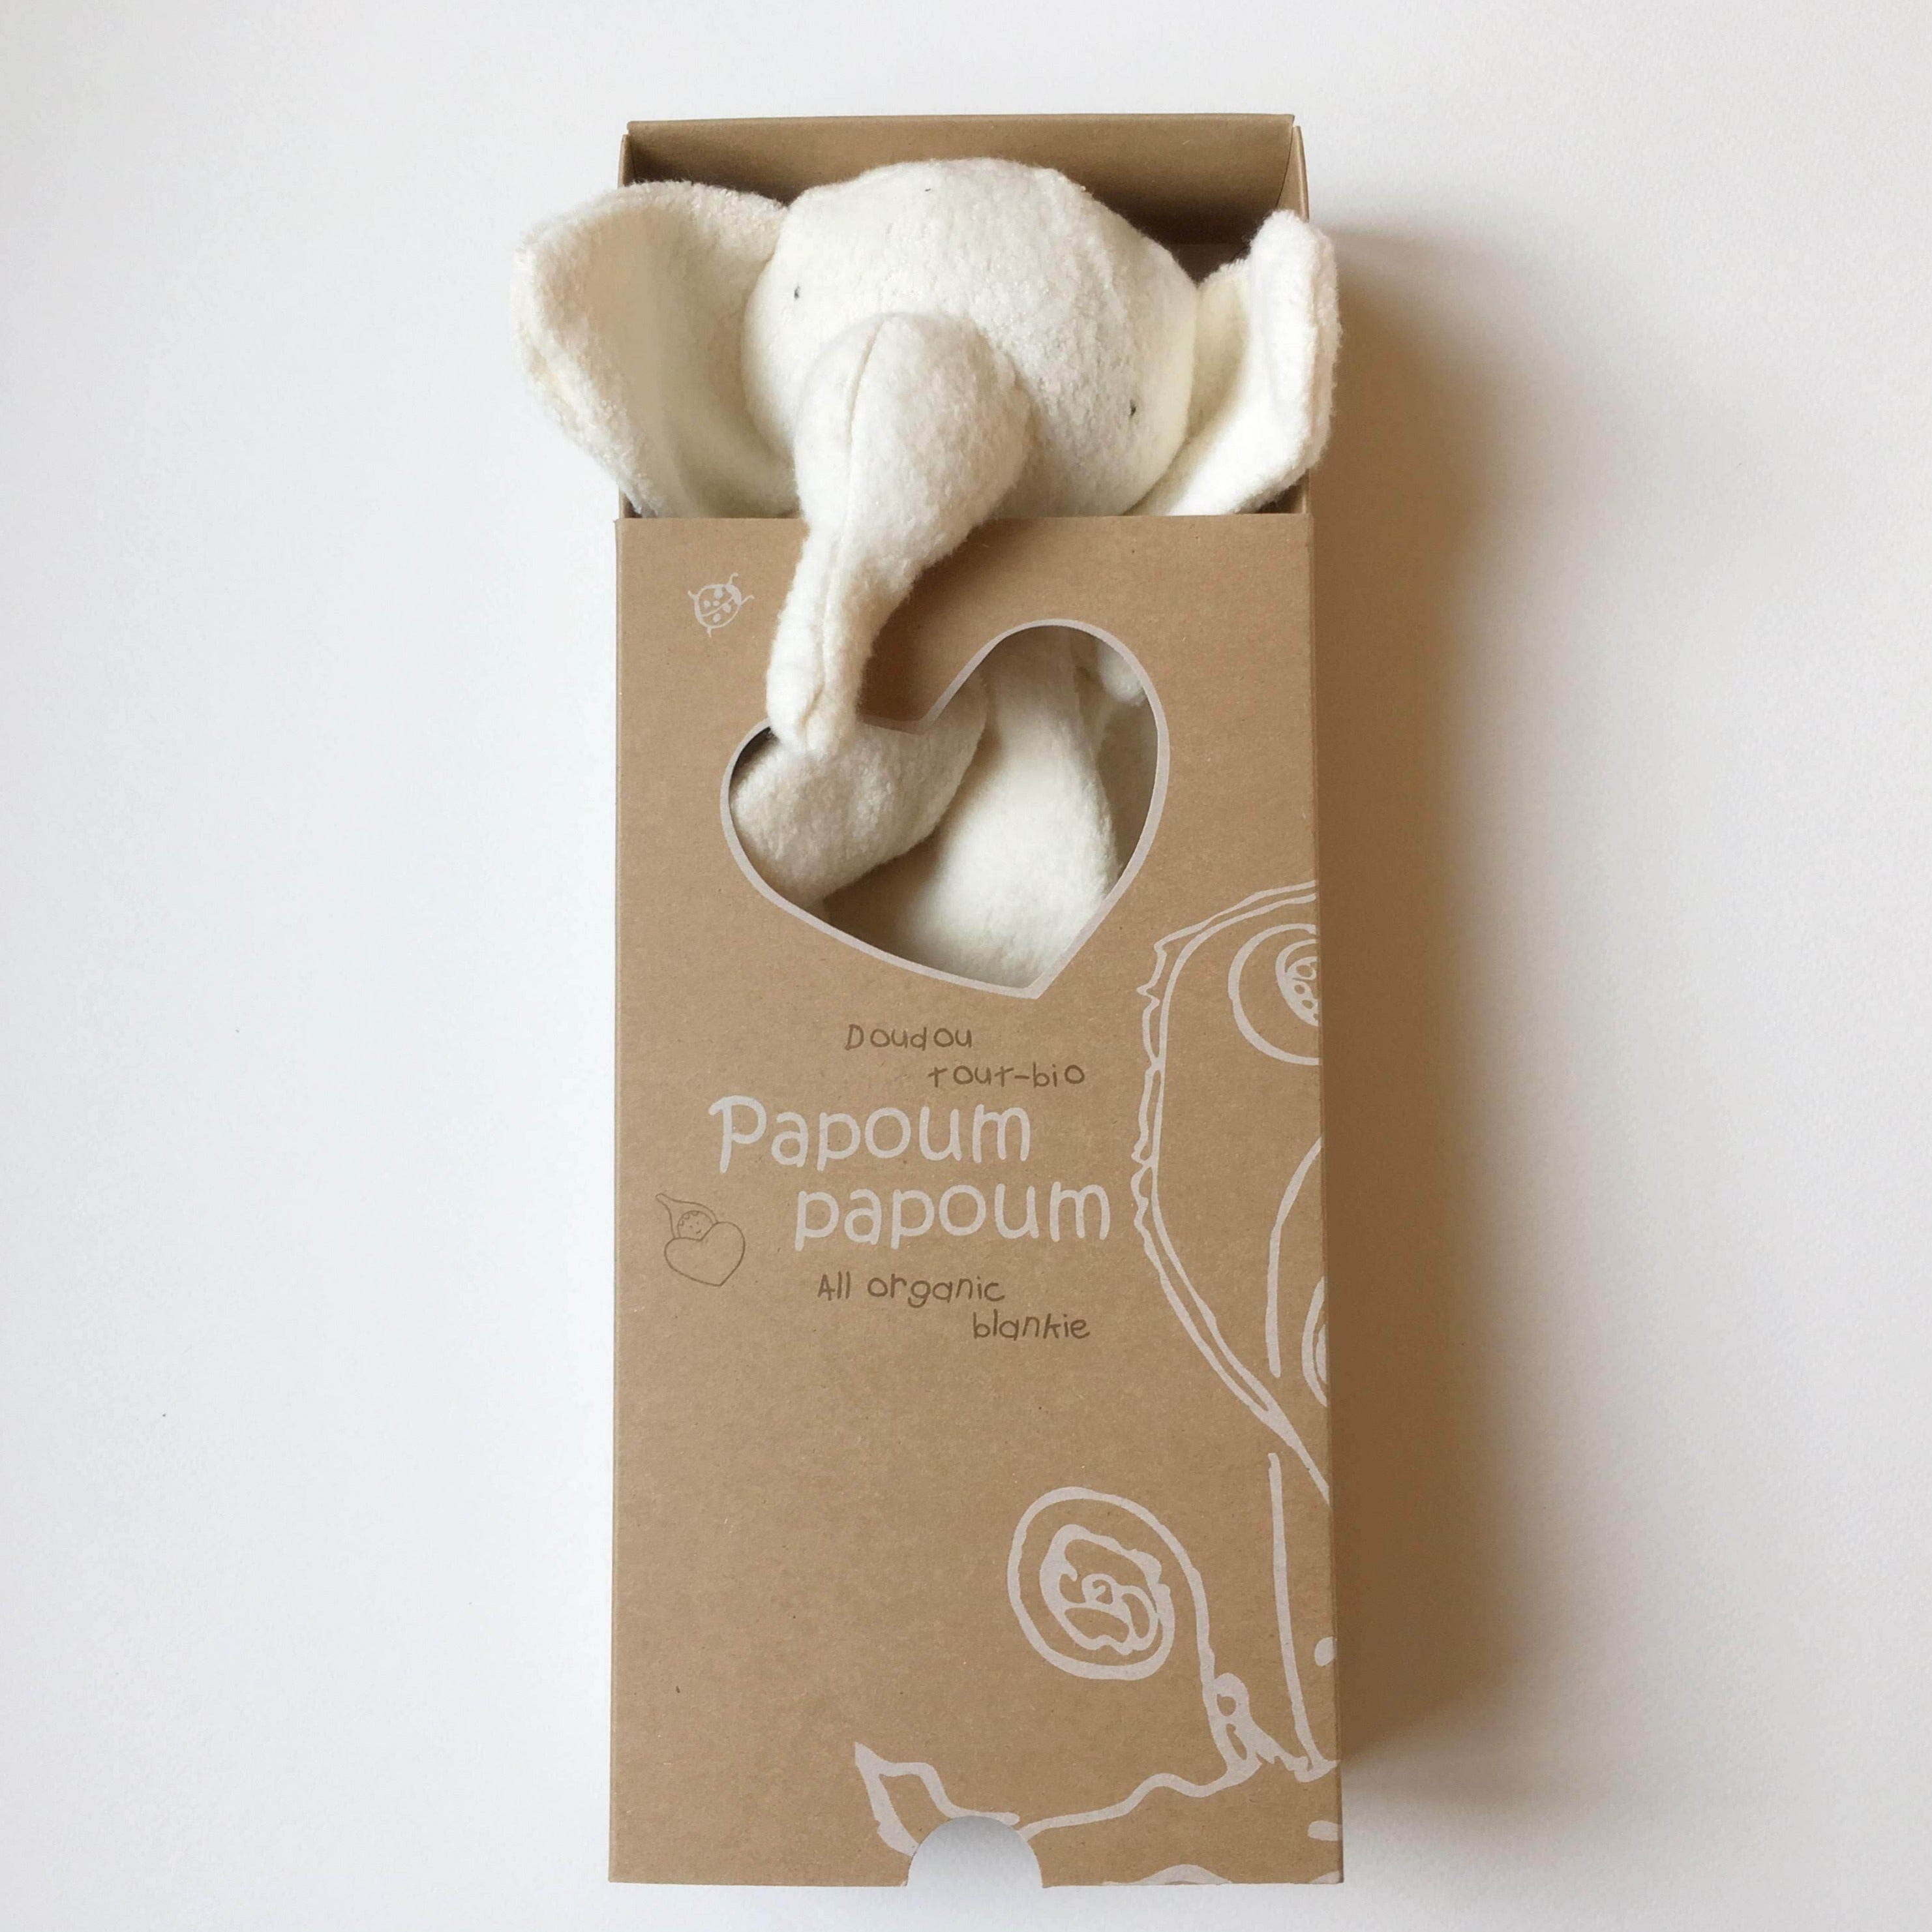 Éléphant - Doudou coton biologique par Papoum Papoum vendu par SignéLocal.com